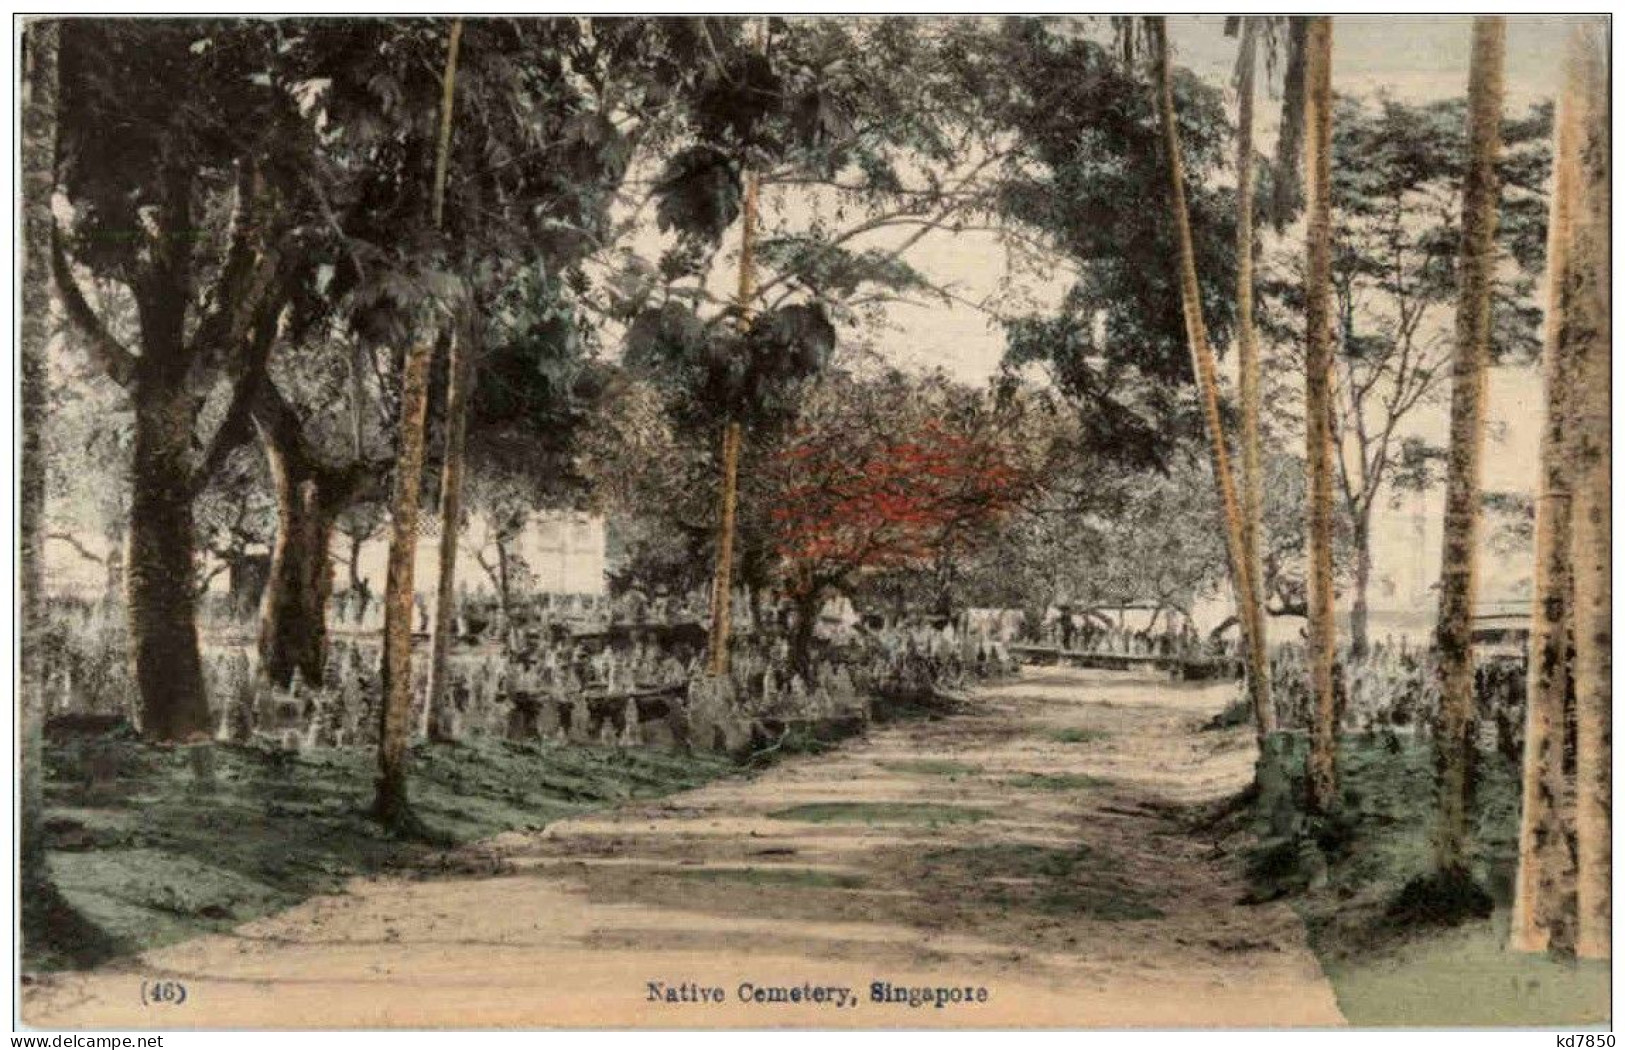 Singapore - Native Cemetery - Singapore